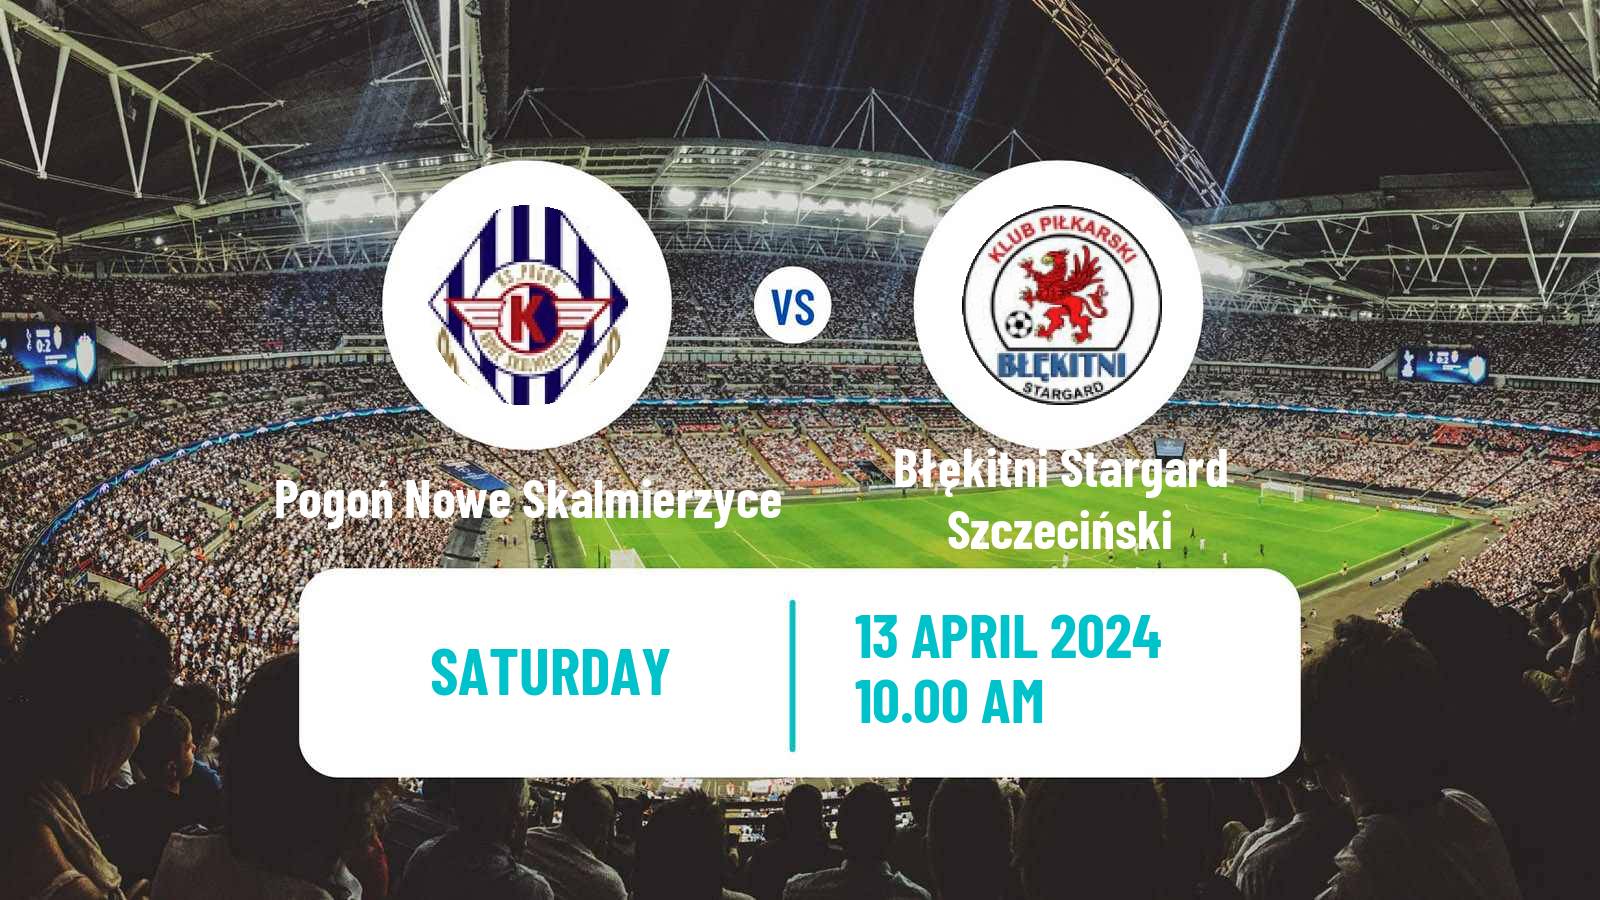 Soccer Polish Division 3 - Group II Pogoń Nowe Skalmierzyce - Błękitni Stargard Szczeciński